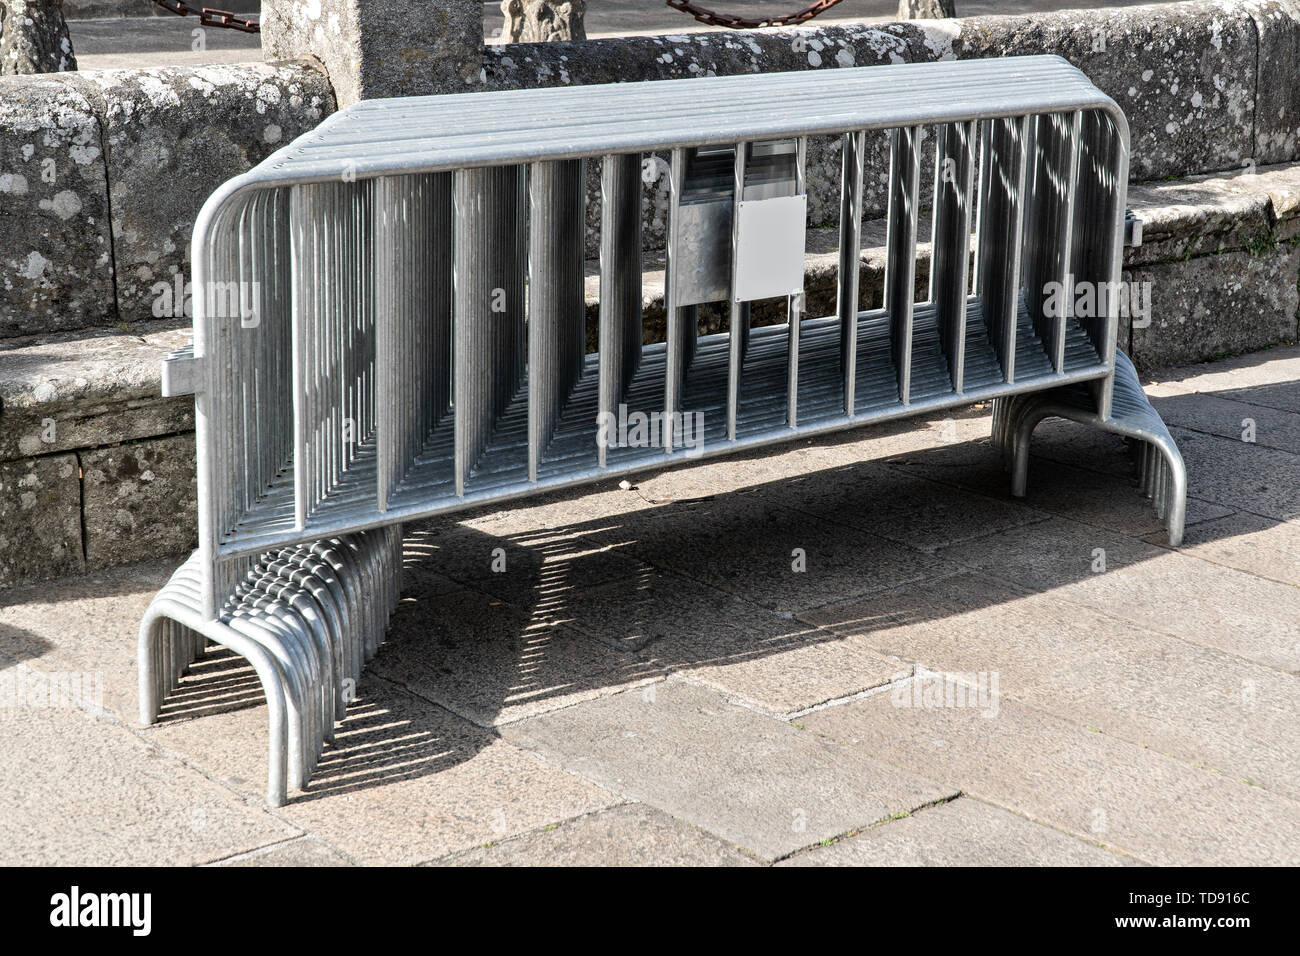 Molti mobili di recinzioni metalliche impilate sulla pubblica piazza con pavimentazione in pietra. Zona di restrizione concept Foto Stock